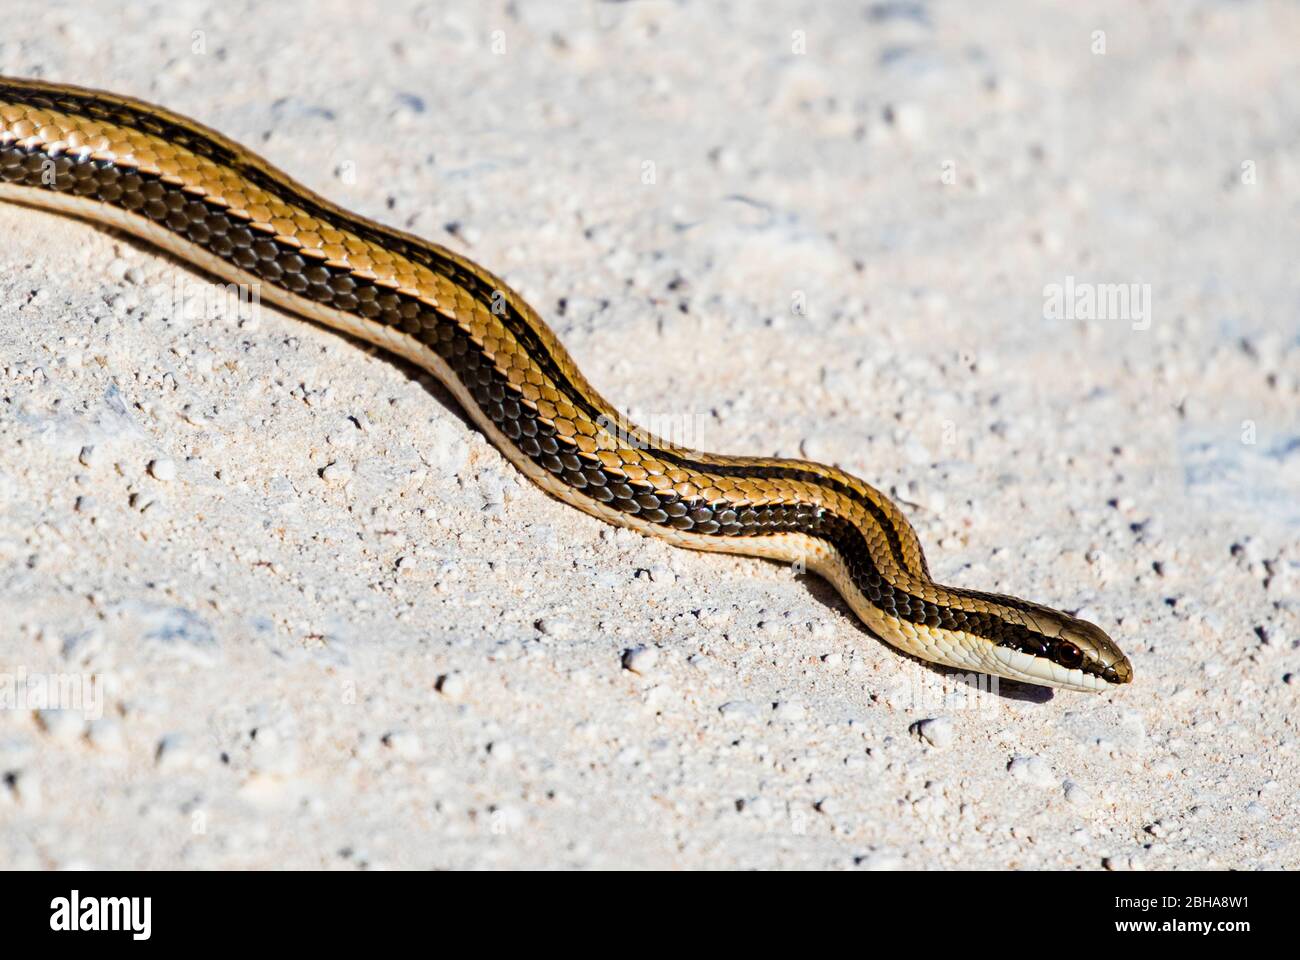 Sand snake, Etosha National Park, Namibia Stock Photo